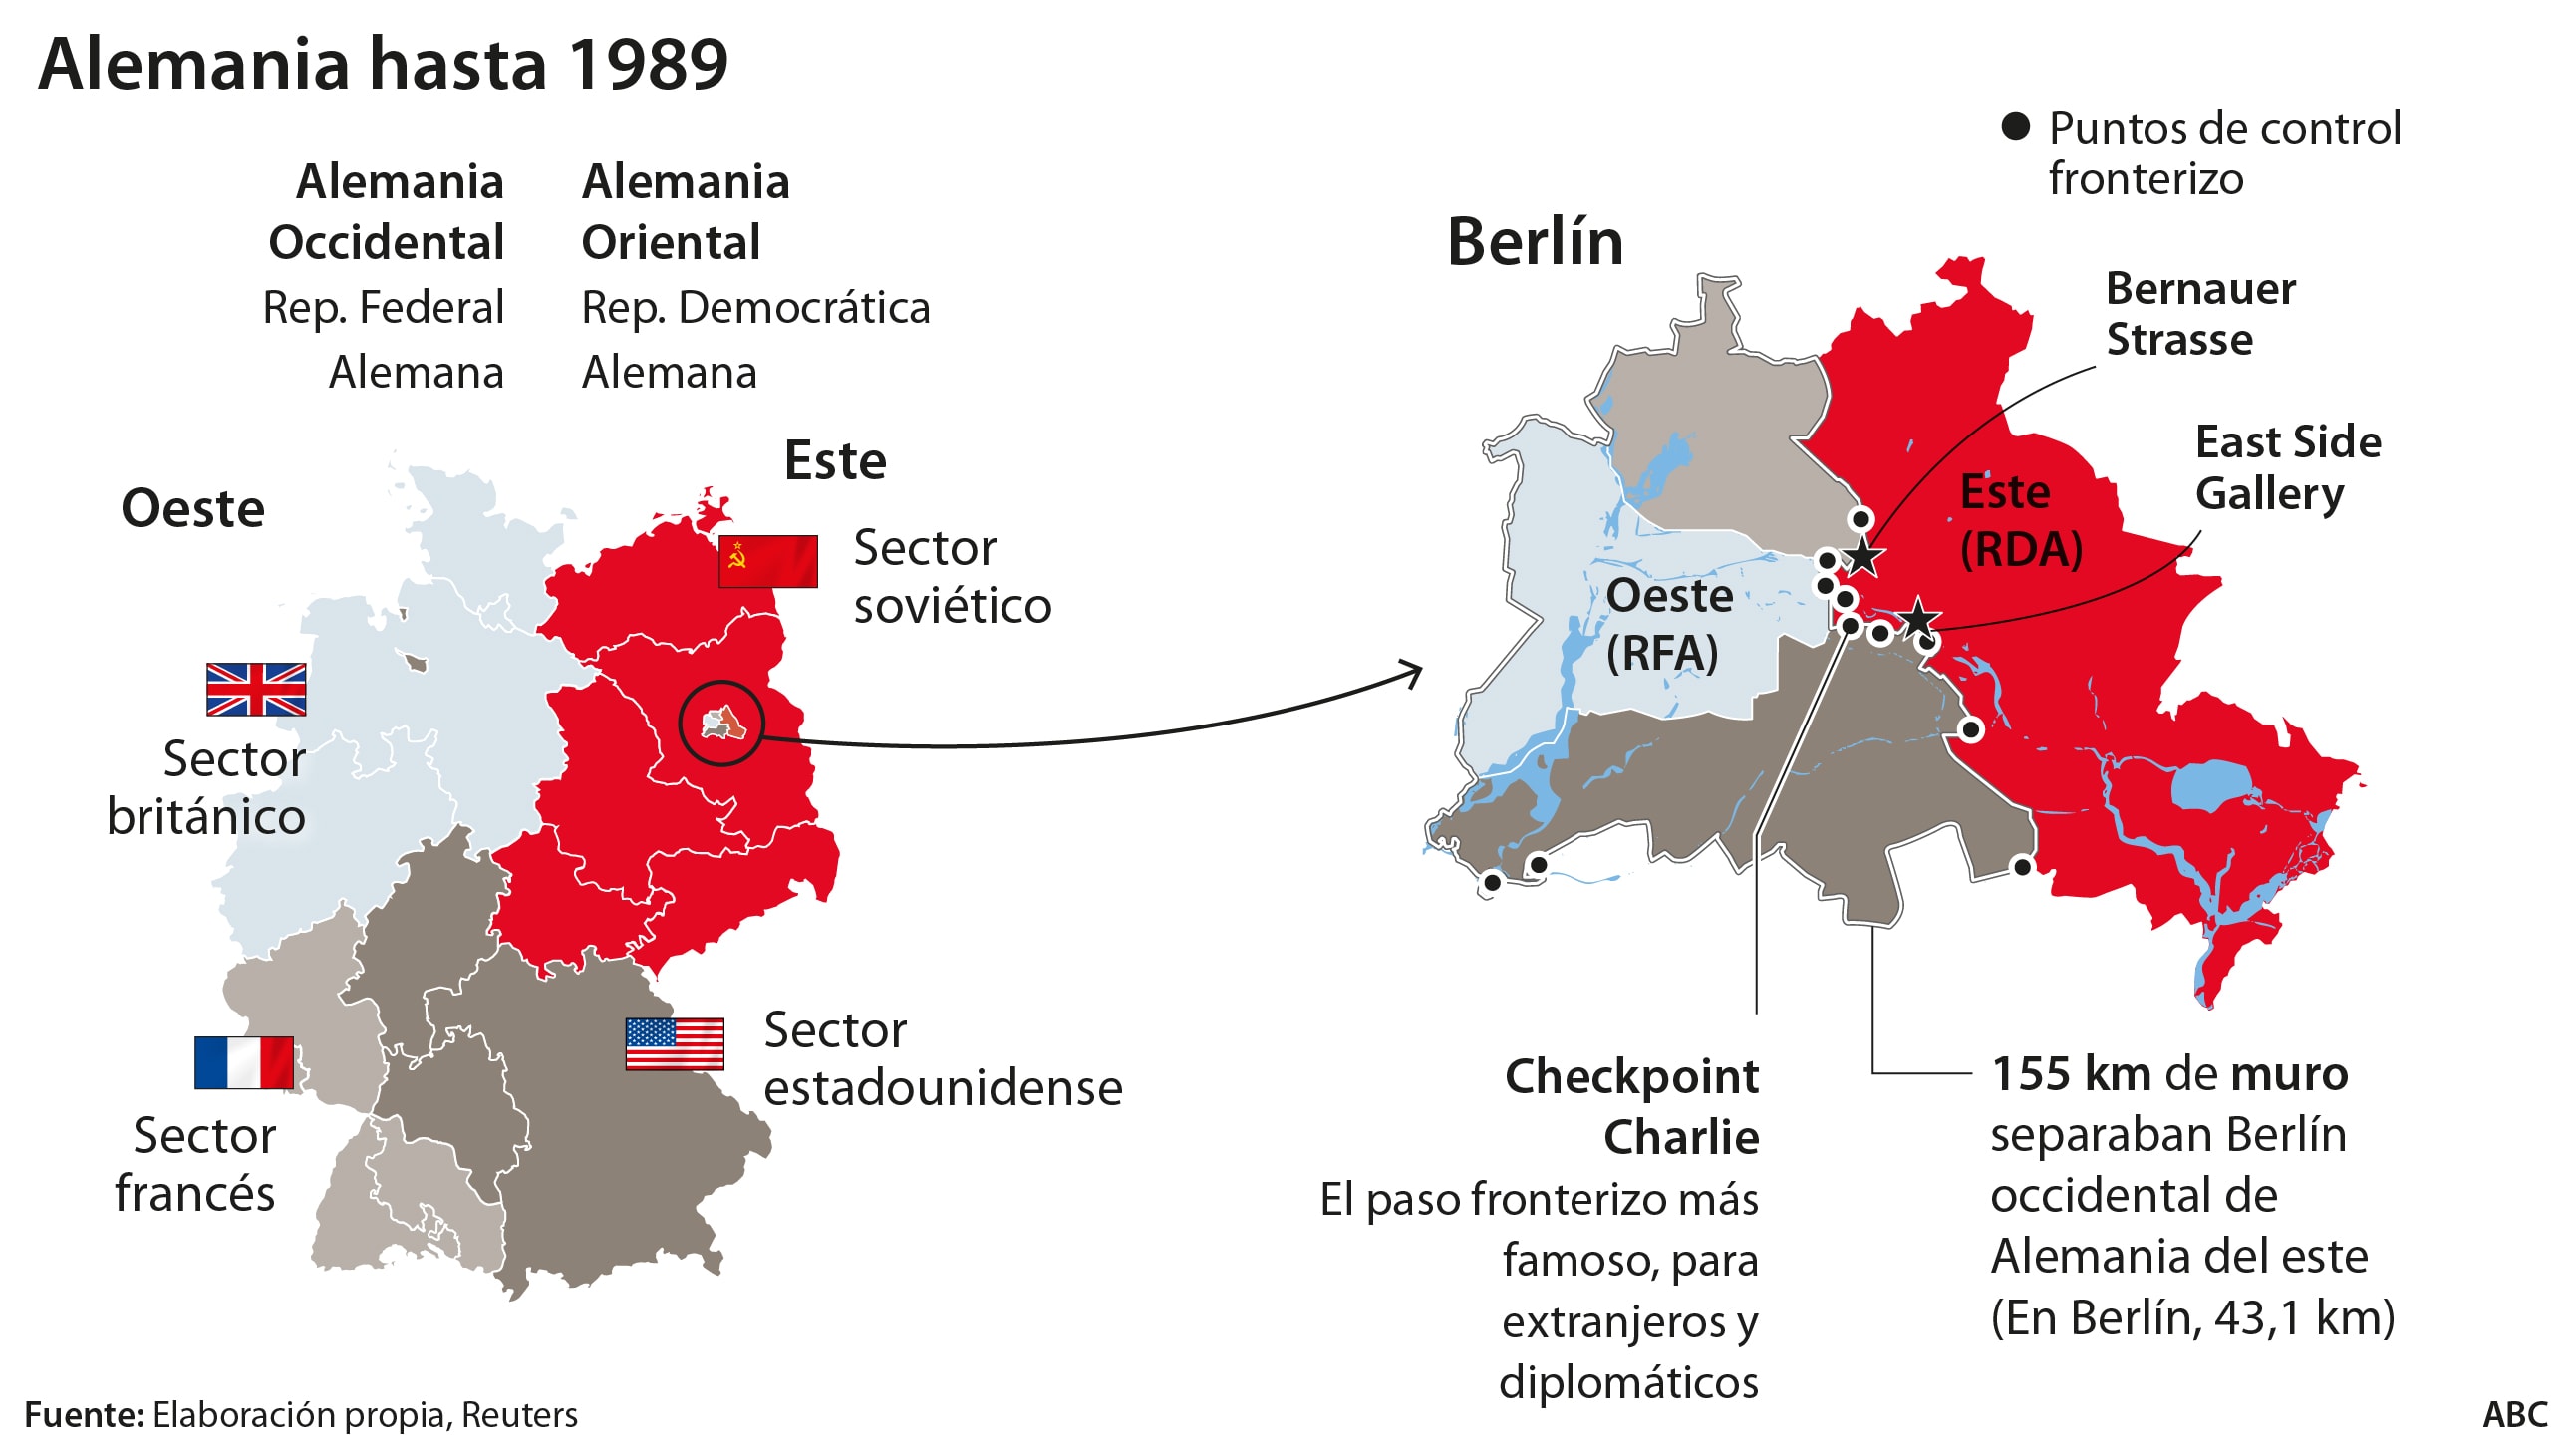 Moderar Desaparecer Pompeya Las defensas del Muro de Berlín: la franja del infierno que ahogó a  millones de personas